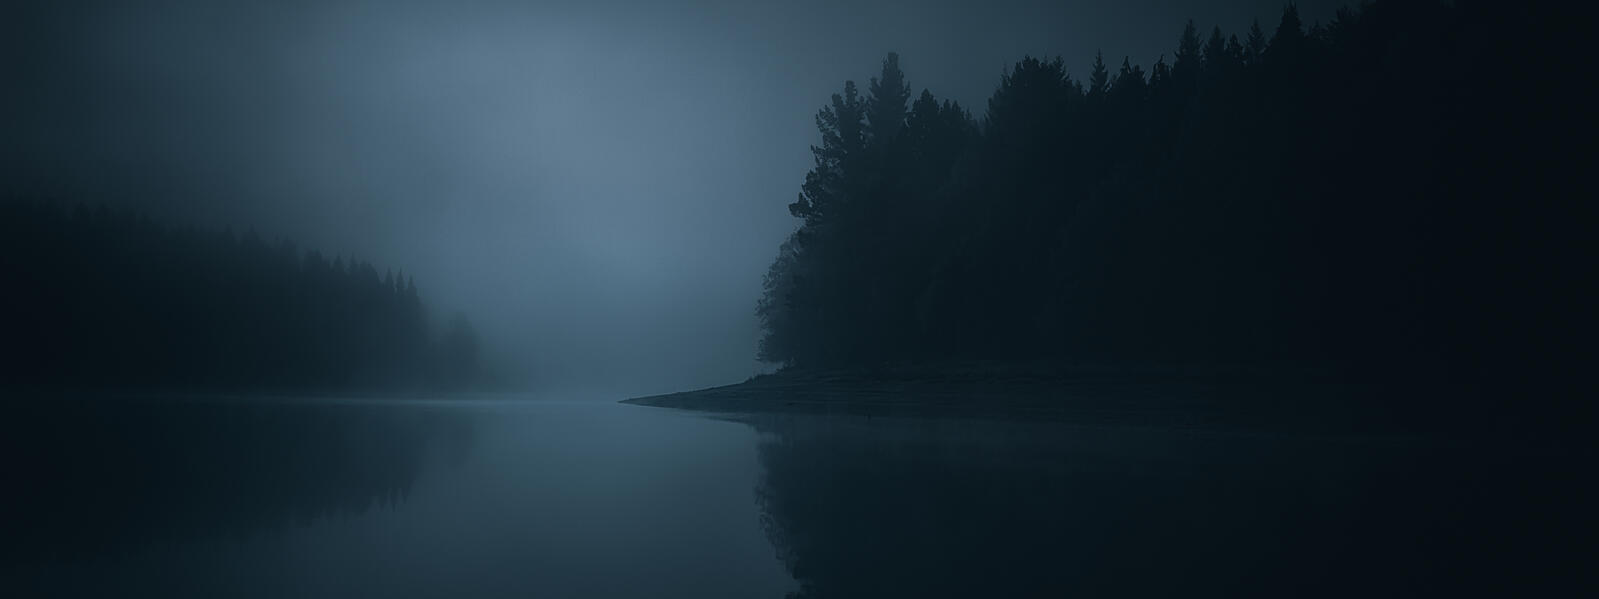 Dark night scene of lake and trees